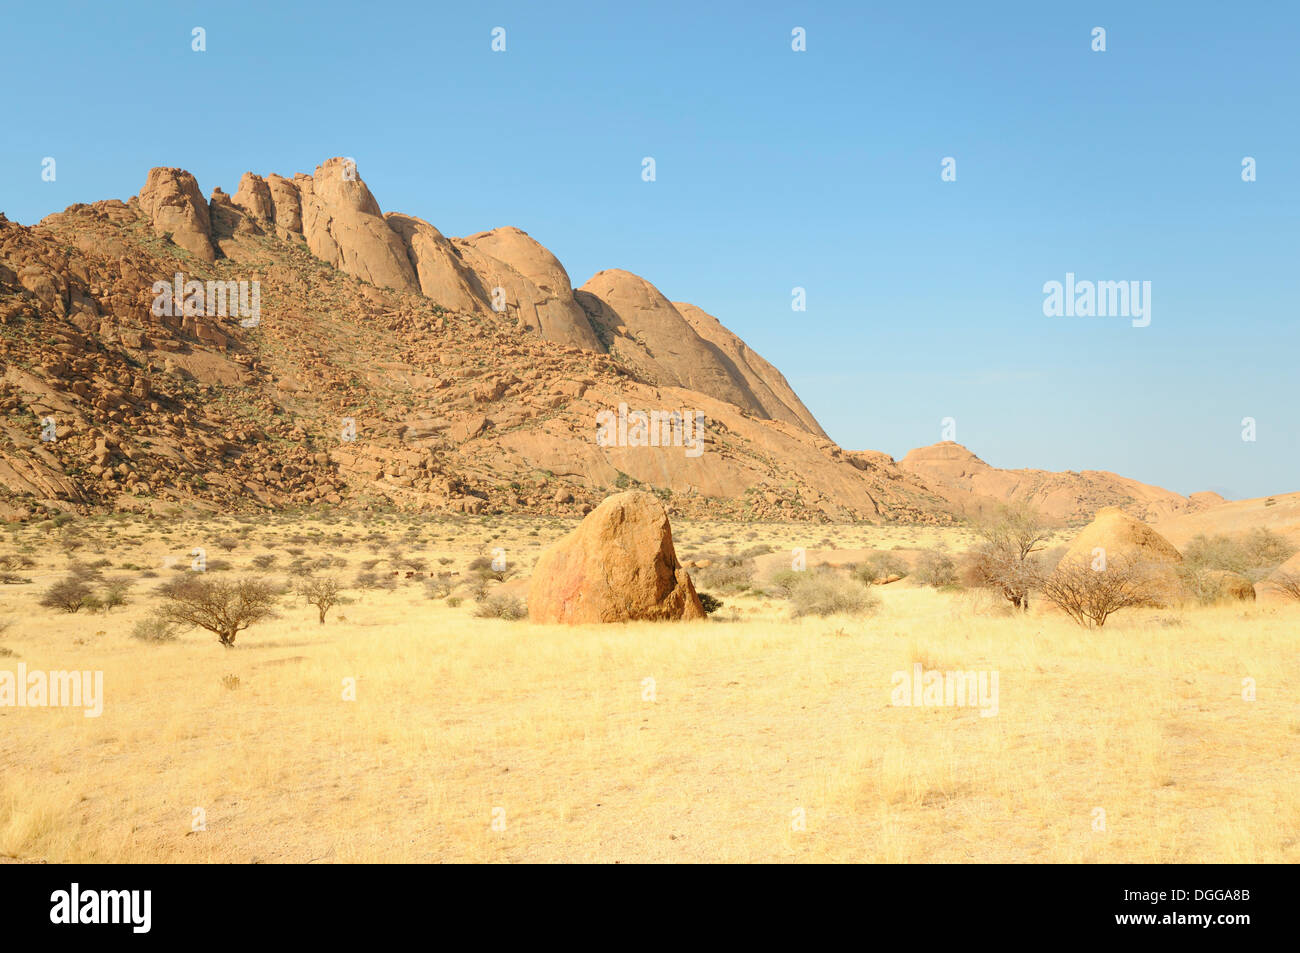 Paysage de savane avec des rochers de granit et de montagne Spitzkoppe, Pontok Spitzkuppe Große Montagnes, réserve naturelle, la Namibie Banque D'Images